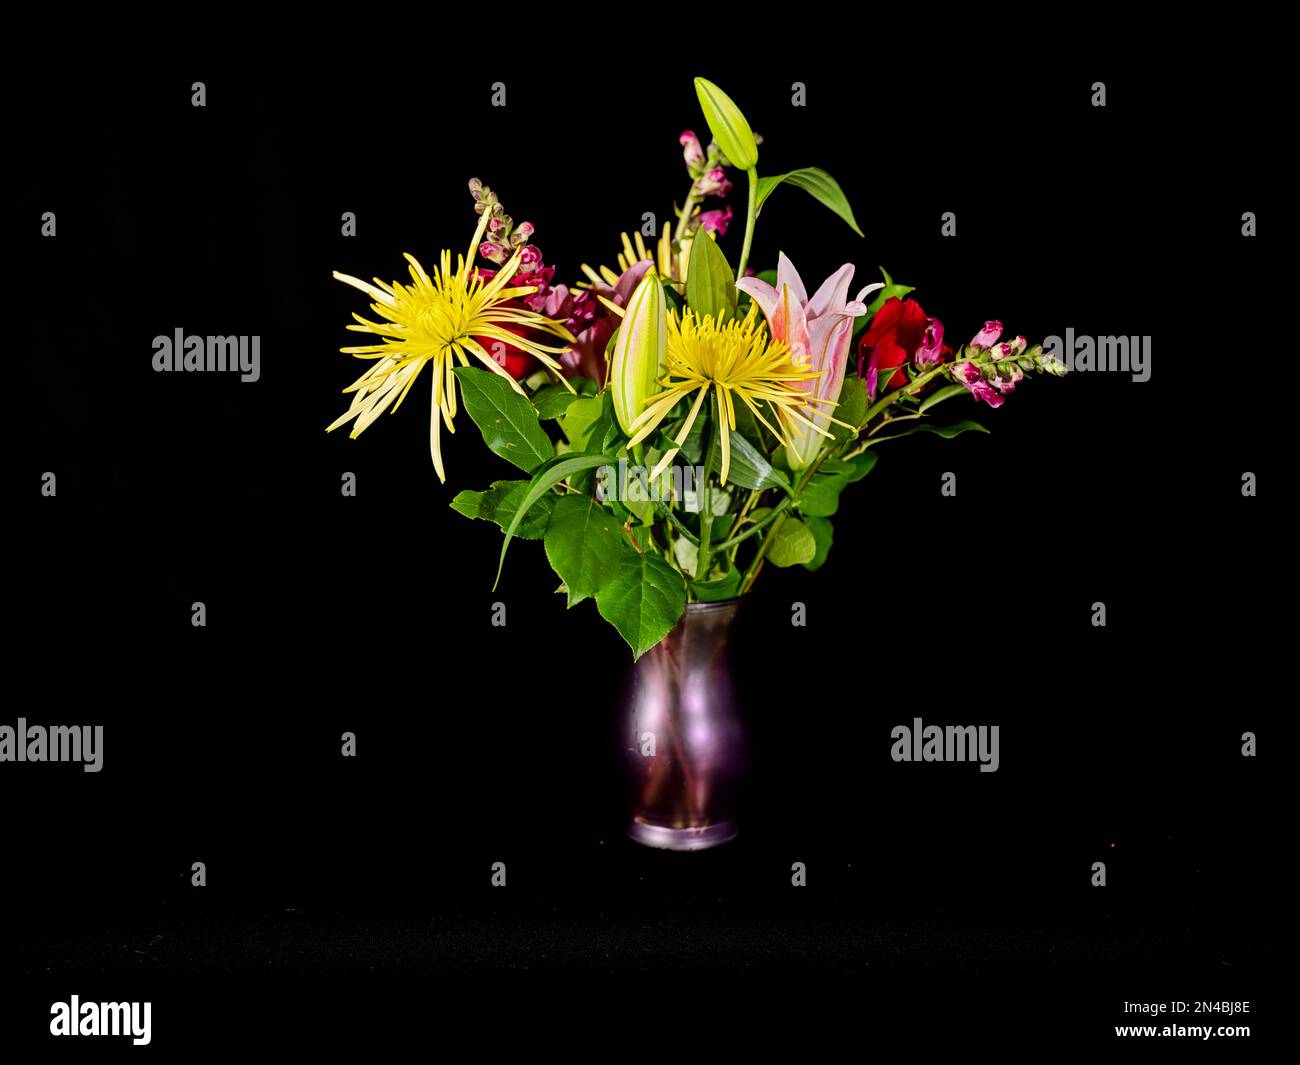 La vie d'un joli arrangement floral dans un vase violet est mise en évidence sur un fond noir. Banque D'Images